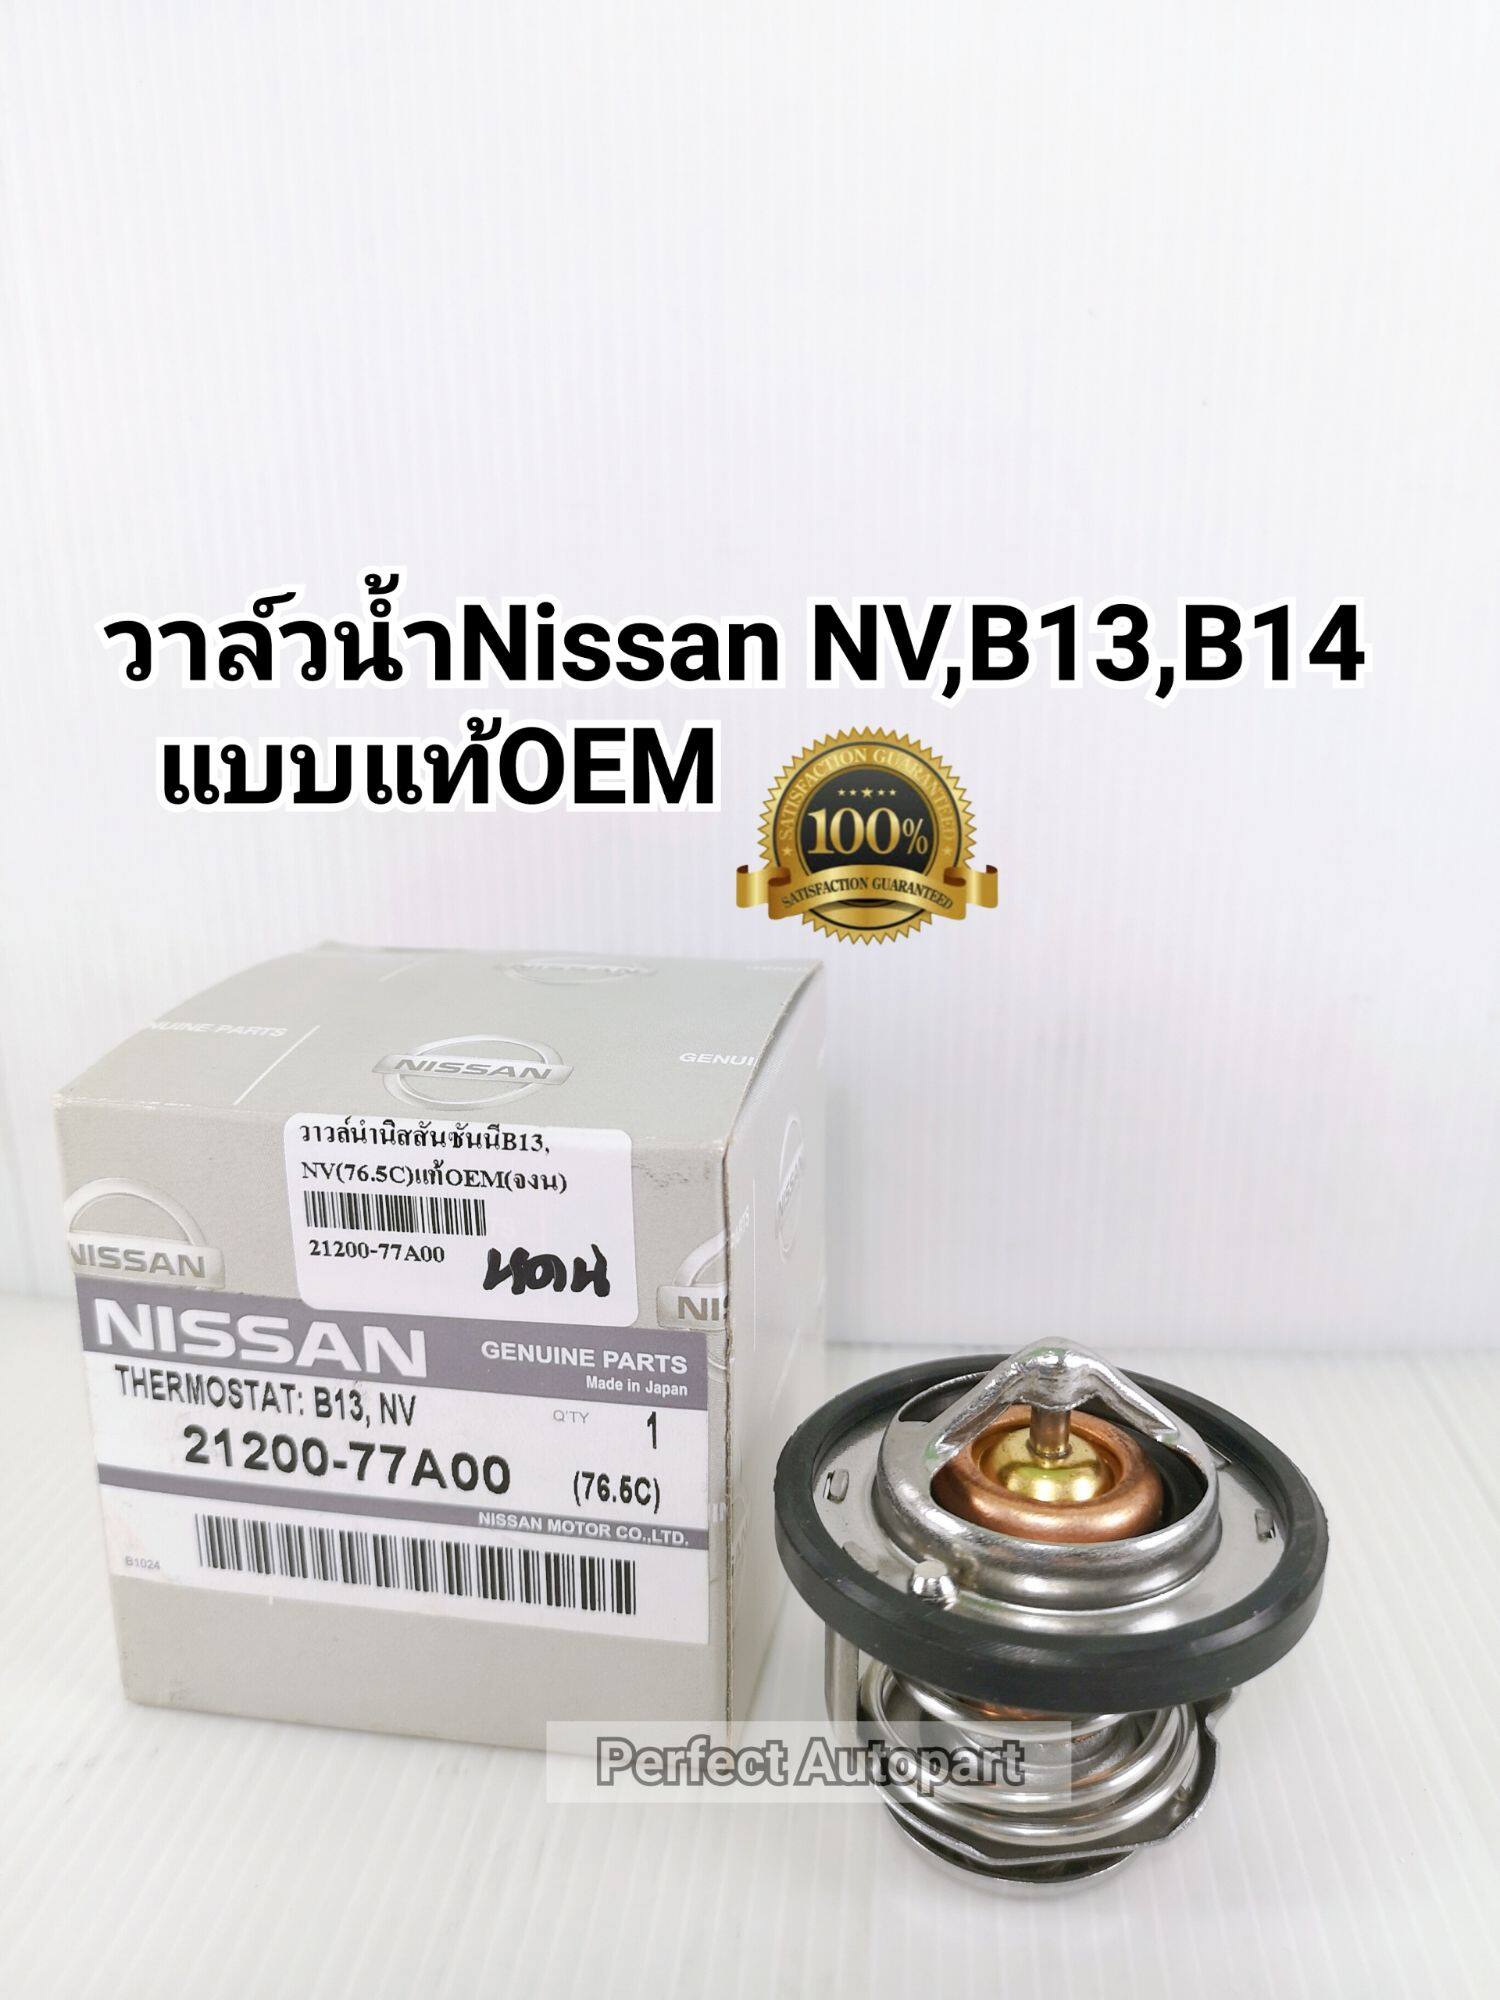 วาล์วน้ำNV B13 B14 Nissan นิสสันNV,B13,B14เซนทร้า (76.5C)แบบแท้OEM 21200-77A00